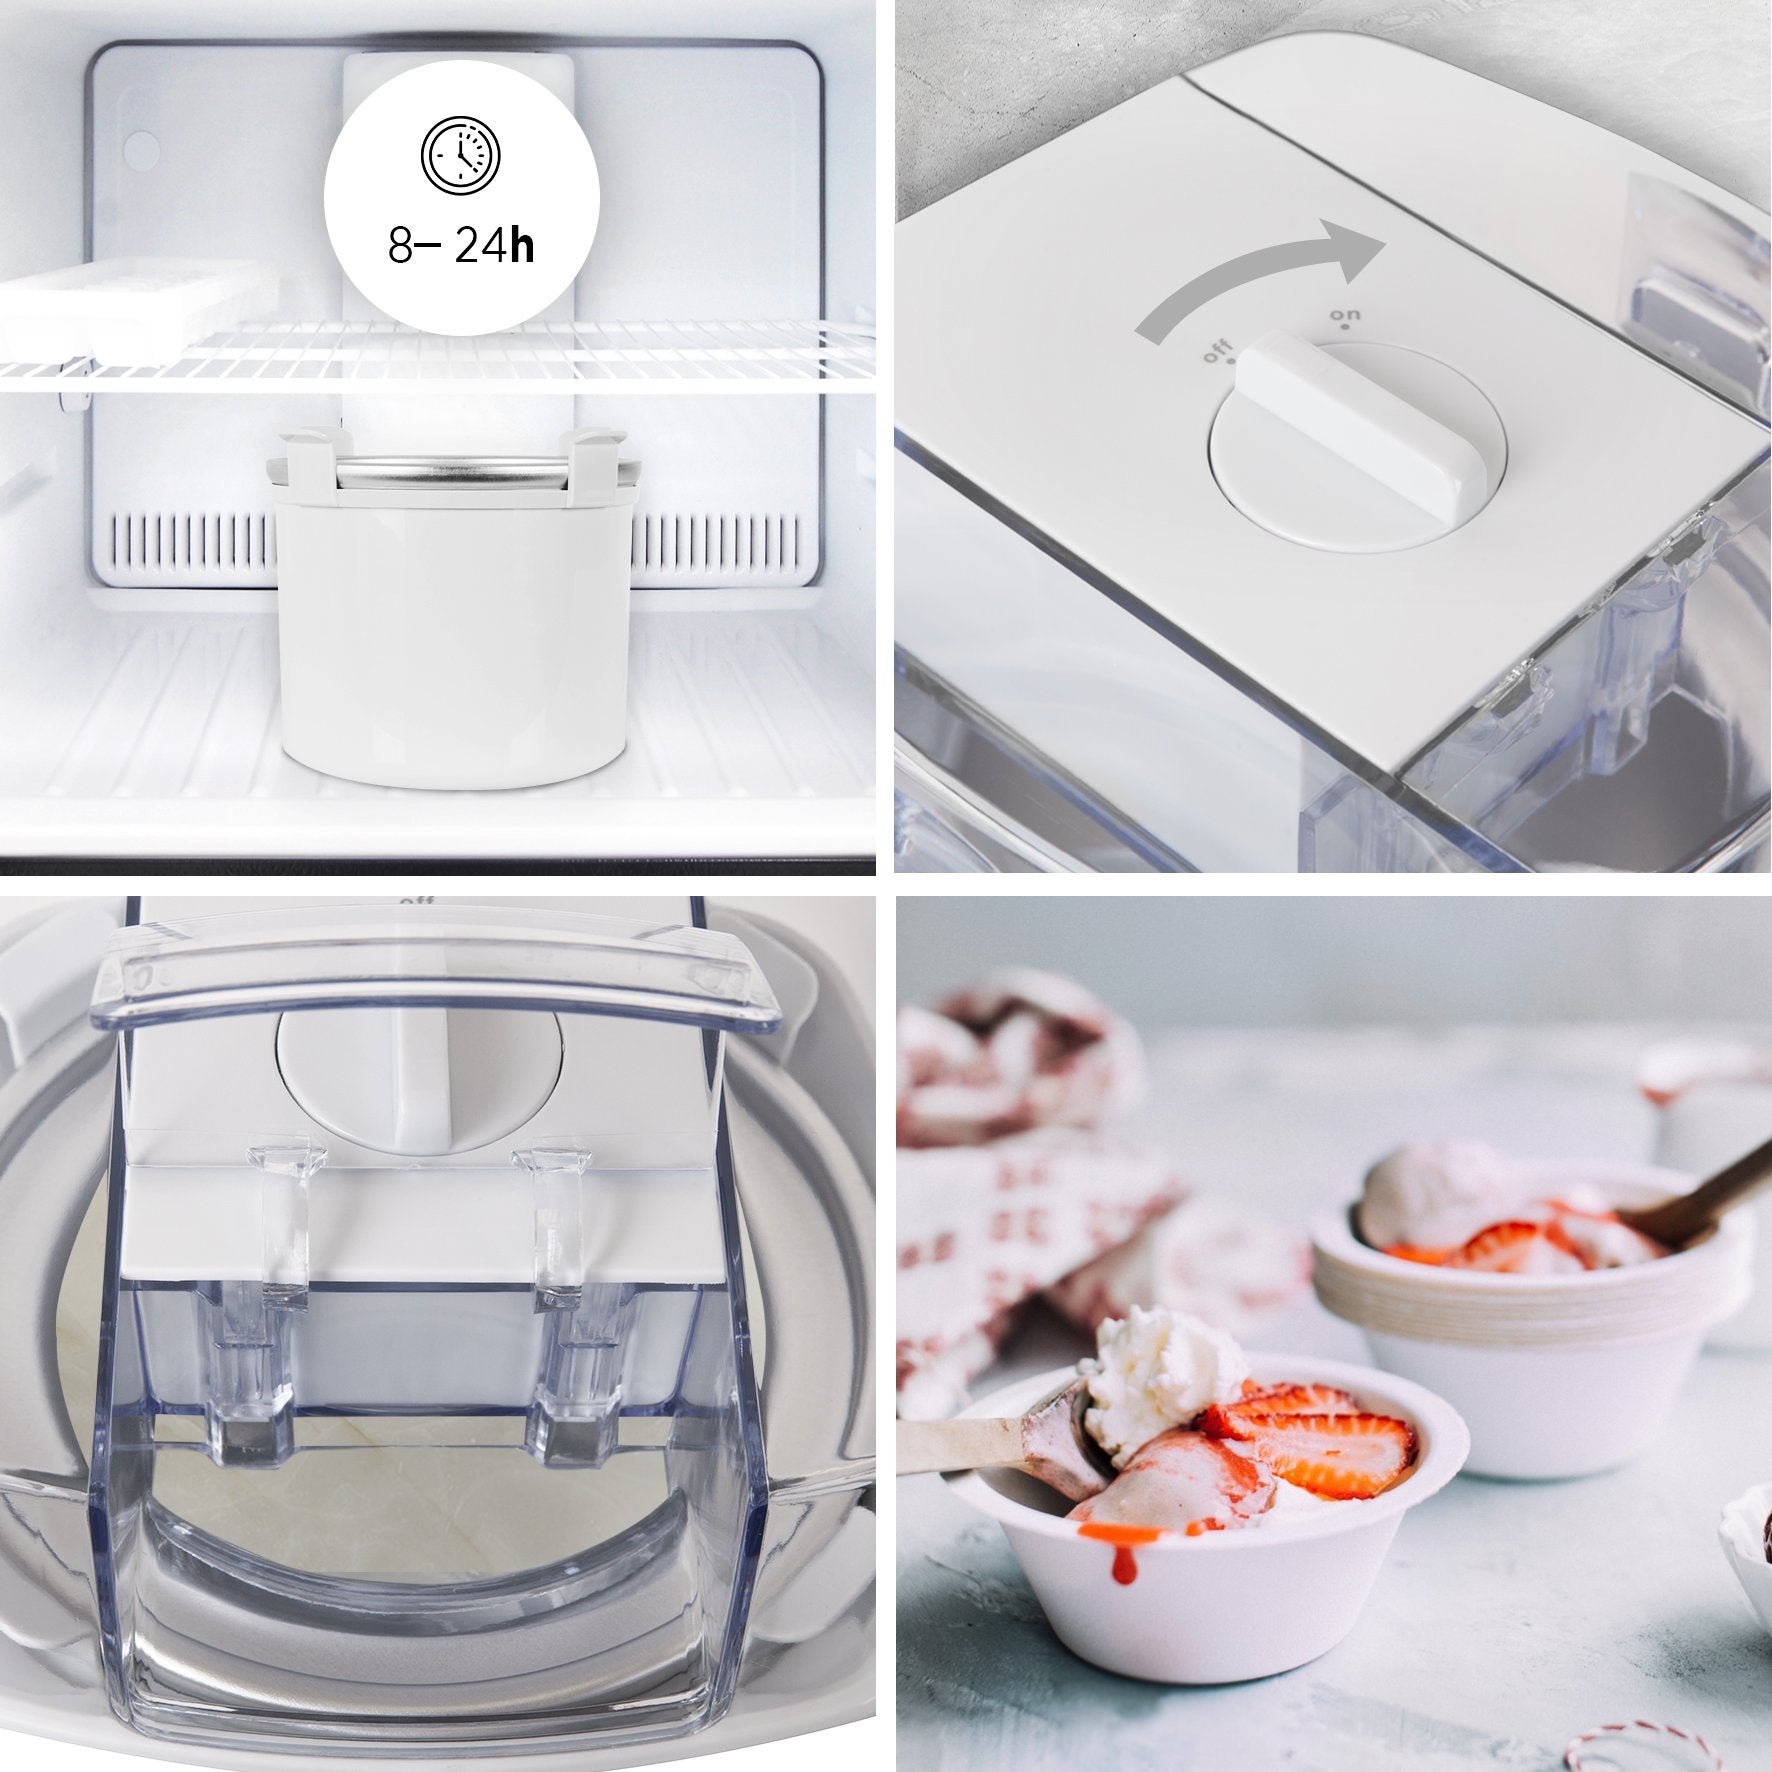 Duronic IM540 Heladera con bol de congelación de 1.5L para hacer postres caseros como helados, sorbete y yogur helado caseros en 15-30 minutos - Gran potencia - Incluye pala y accesorios